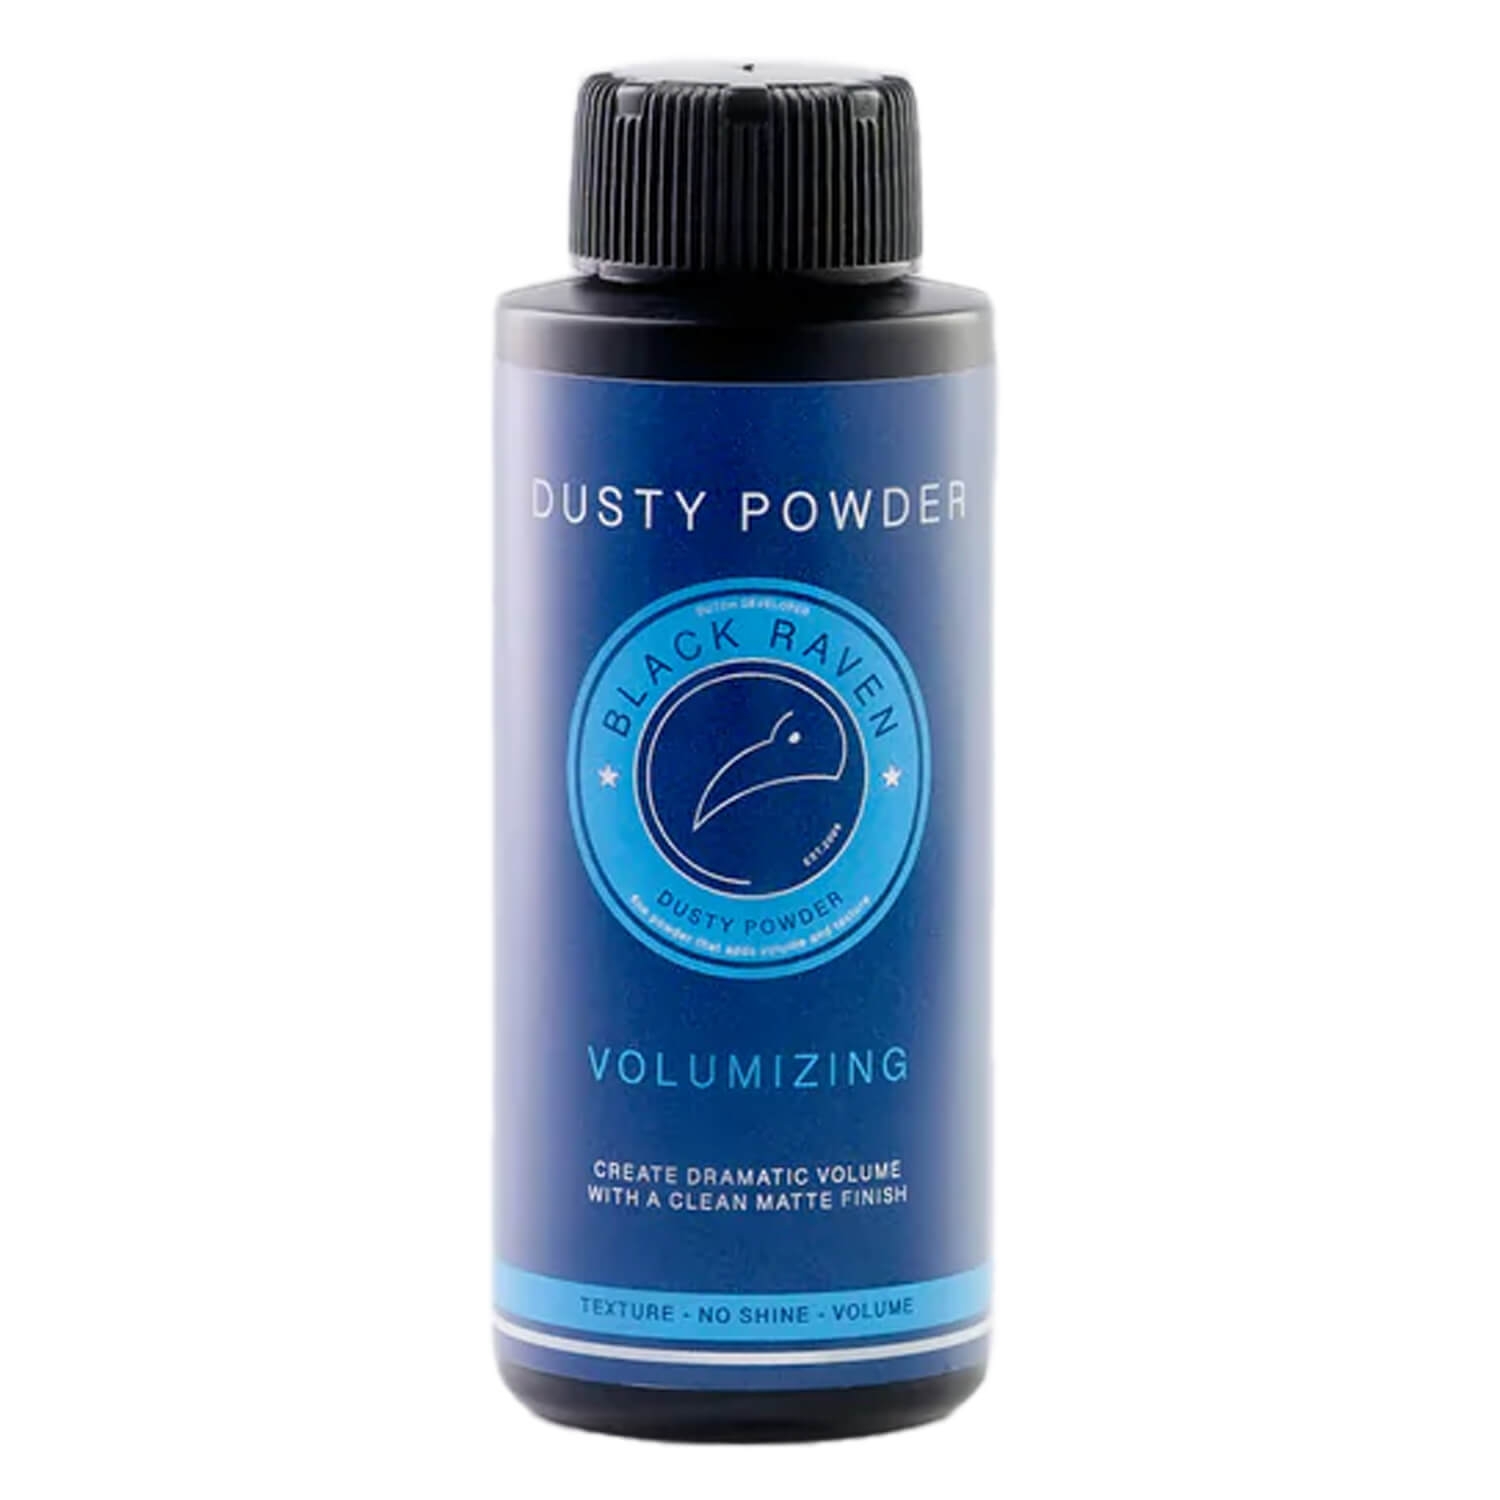 Produktbild von BLACK RAVEN - Dusty Powder